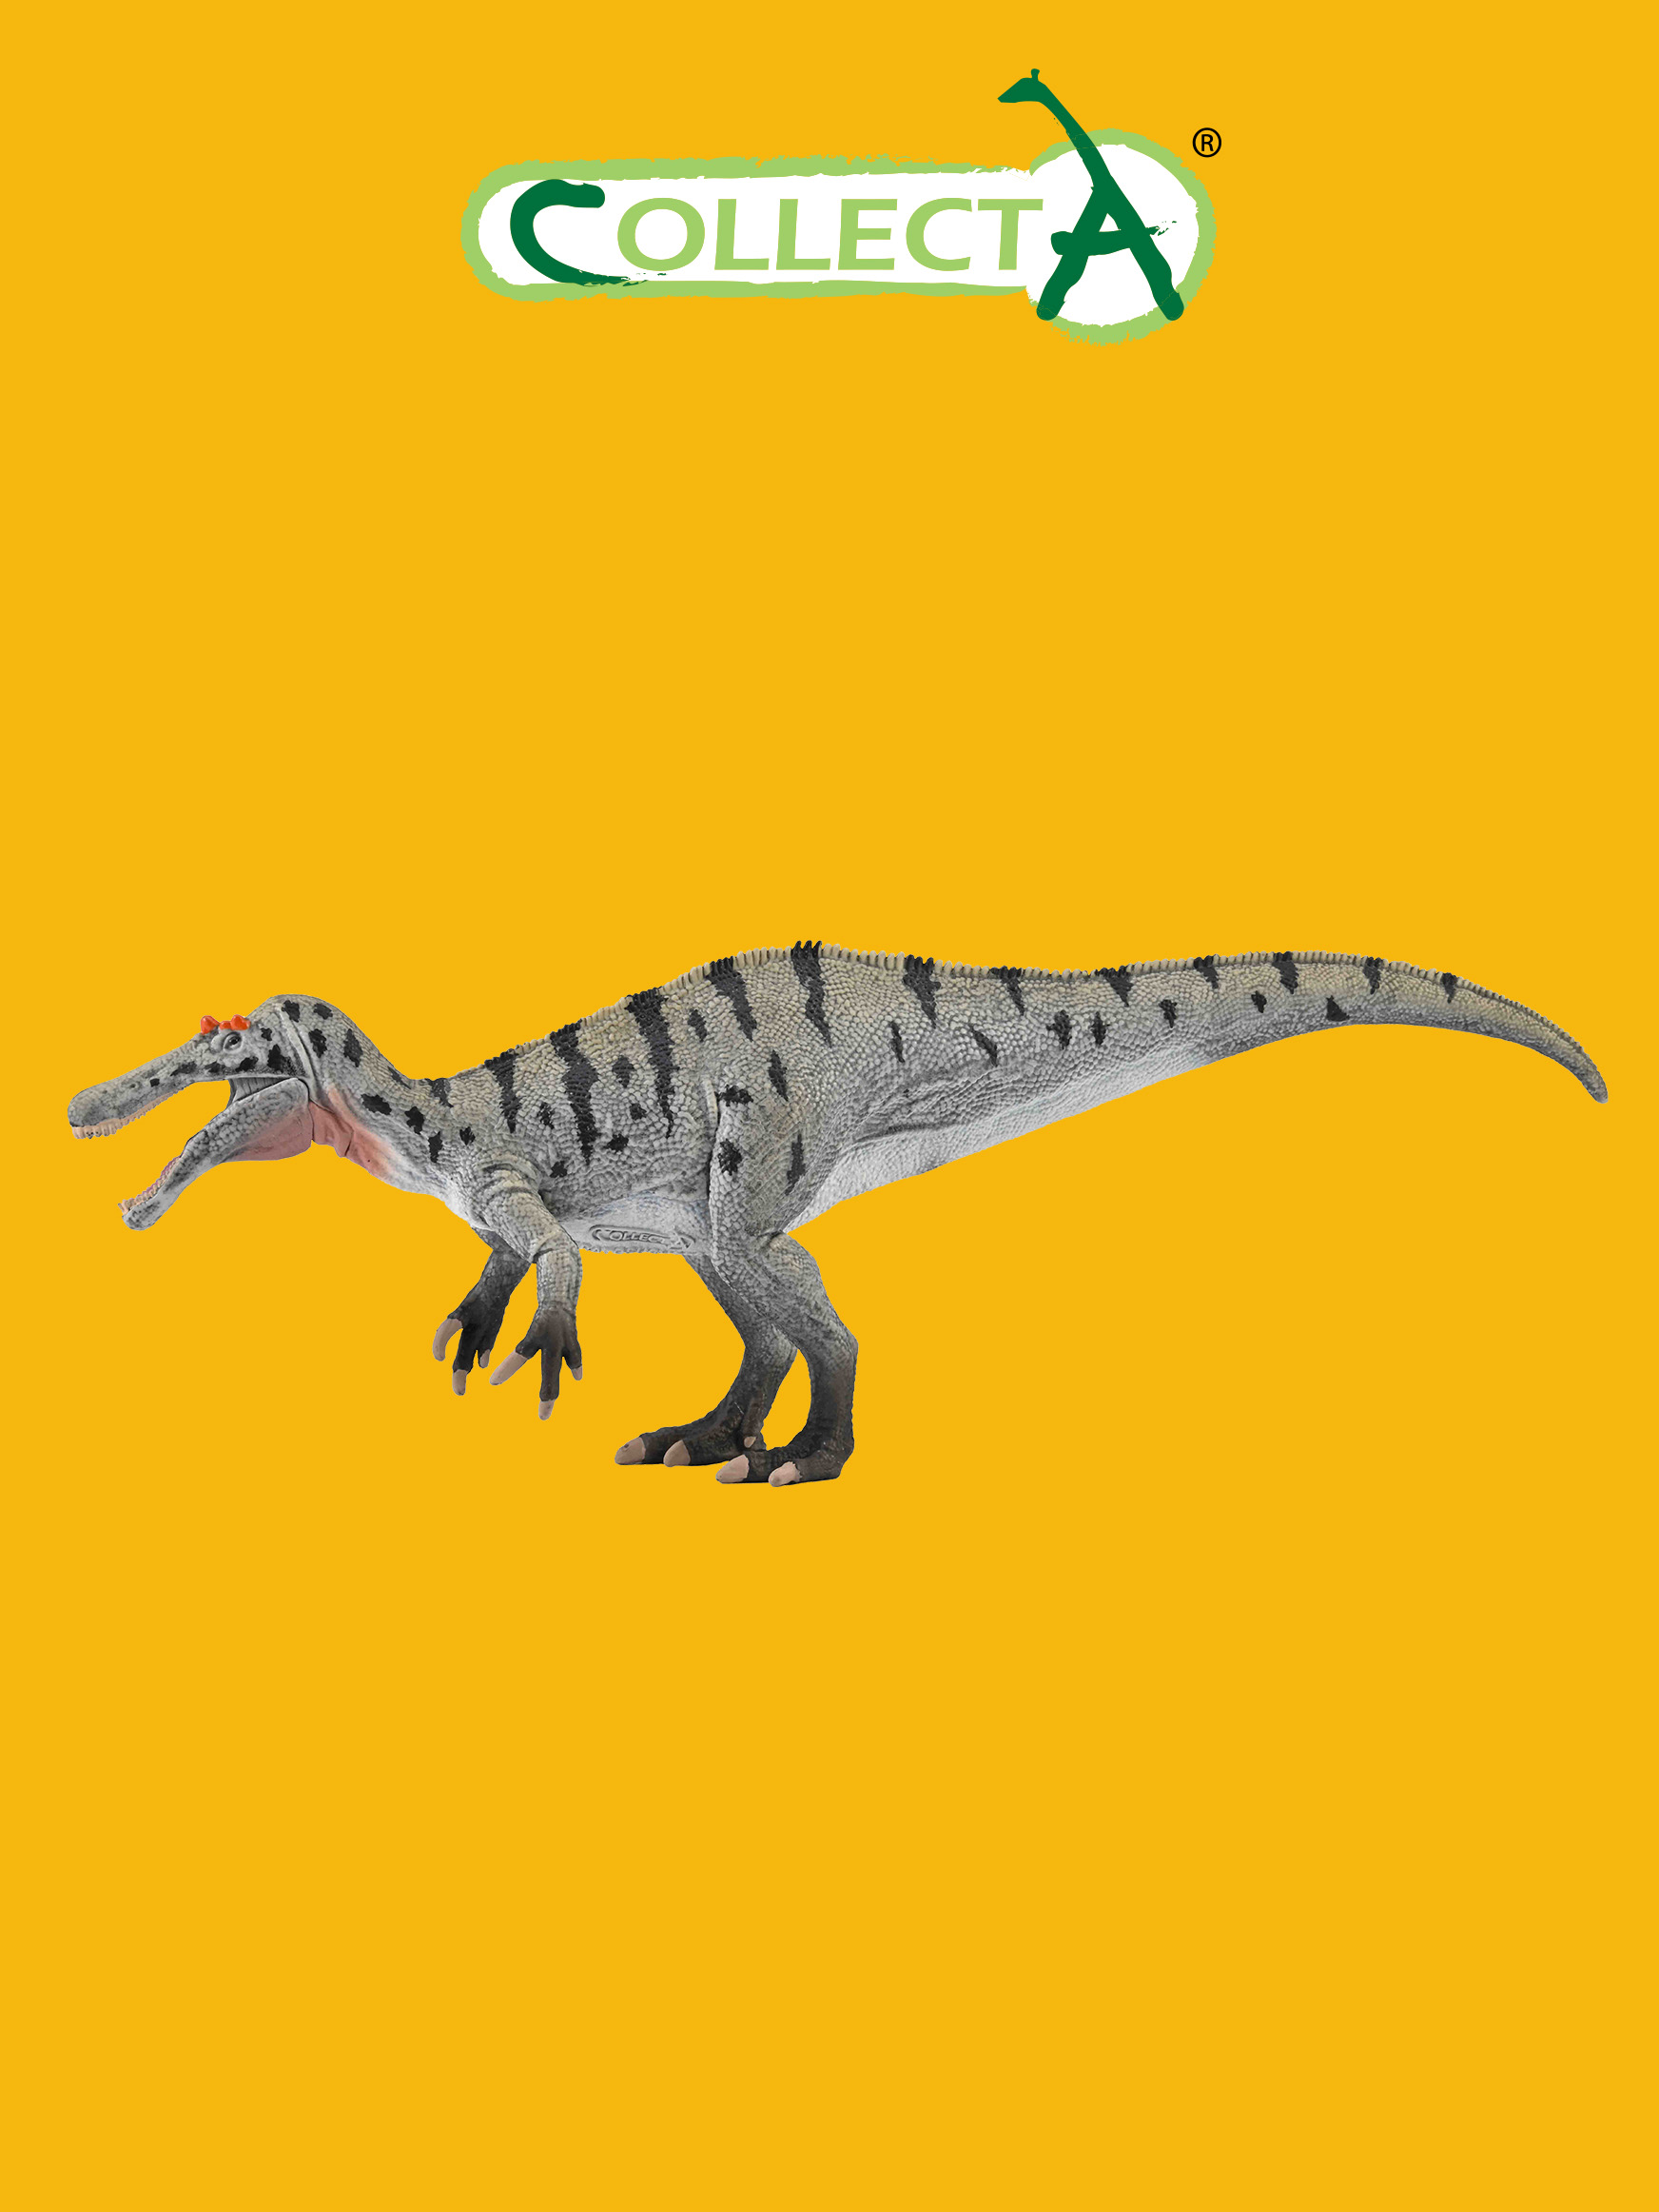 Фигурка Collecta динозавра Цератозухопсов подвижной челюстью фигурка динозавра спинозавр с подвижной челюстью